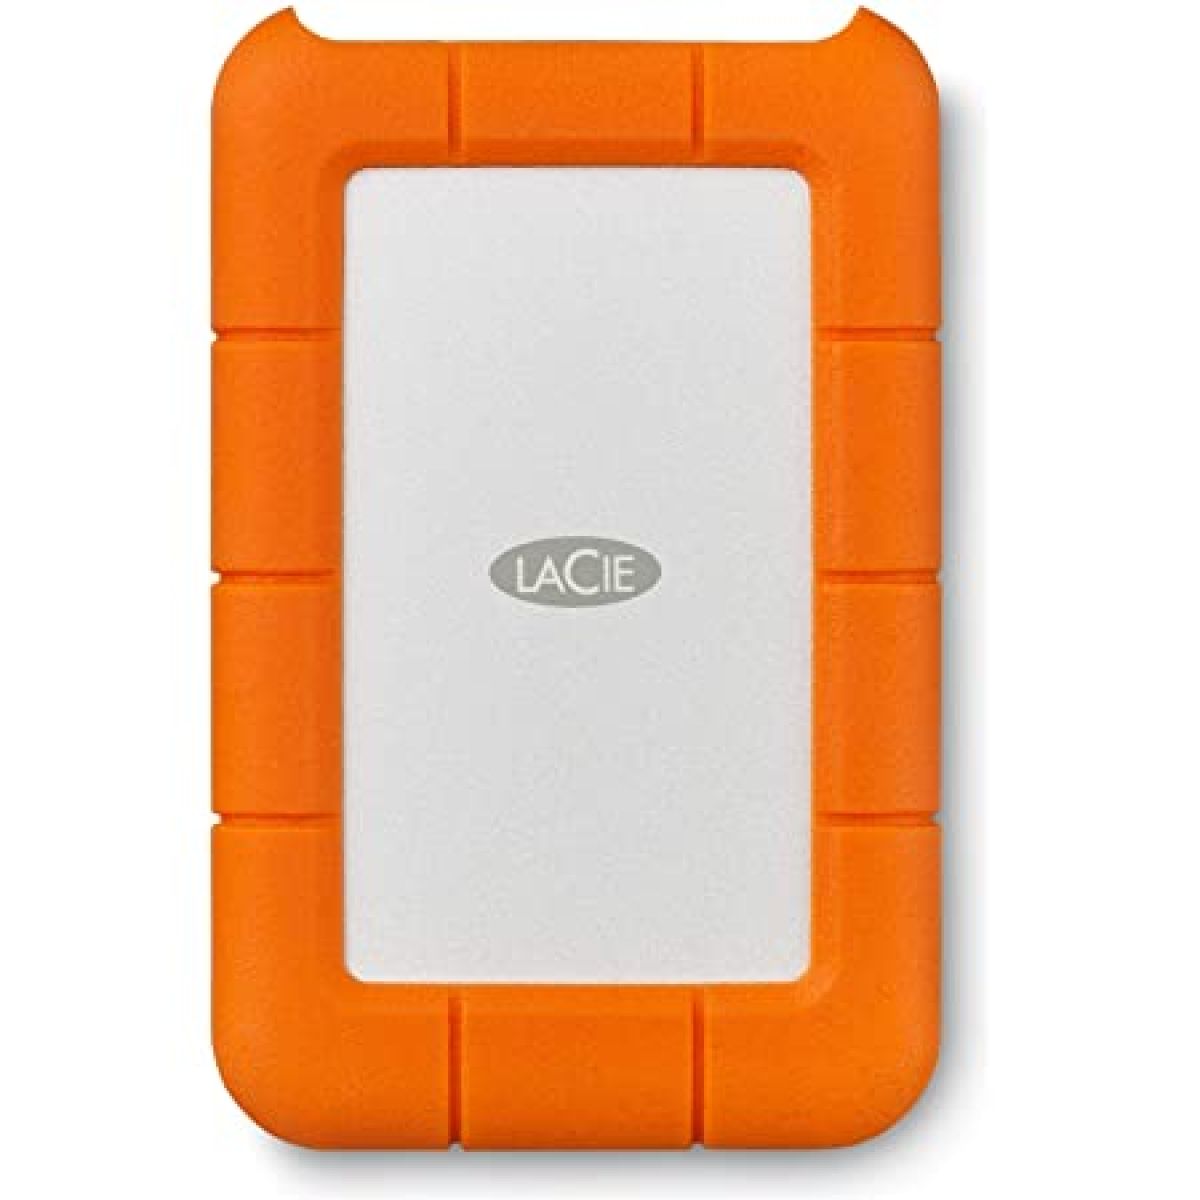 LaCie Mobile Drive 2To disque dur gris/ orange